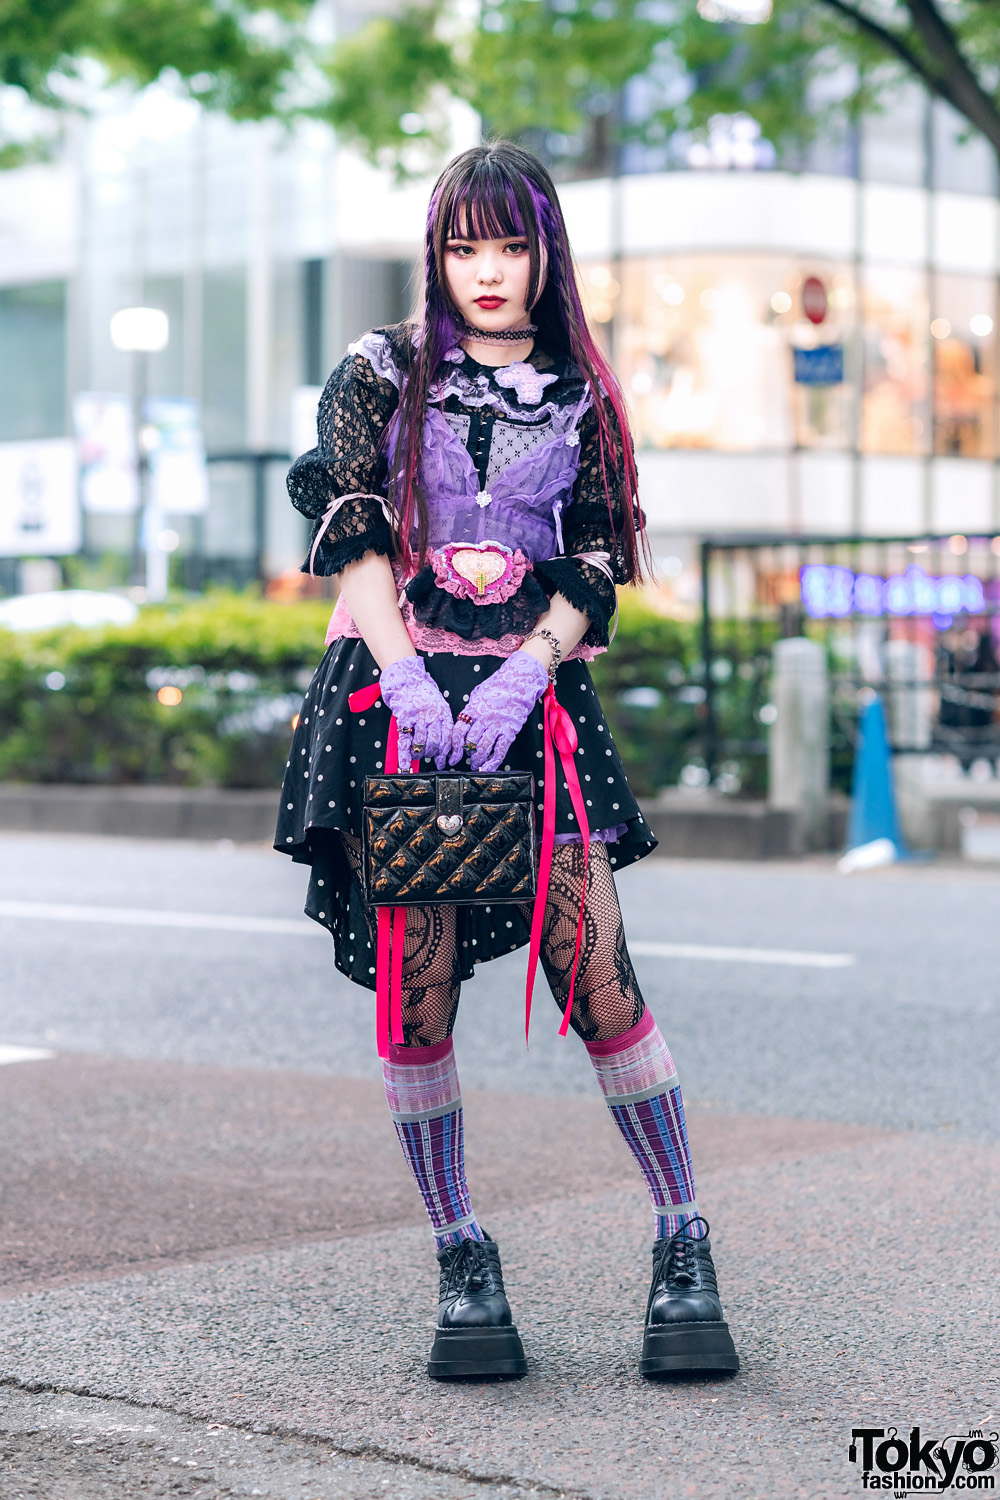 Harajuku Streetwear Style w/ Purple Hair, Lace Gloves, Vintage Polka Dot Skirt, Vivienne Westwood & Demonia Platforms